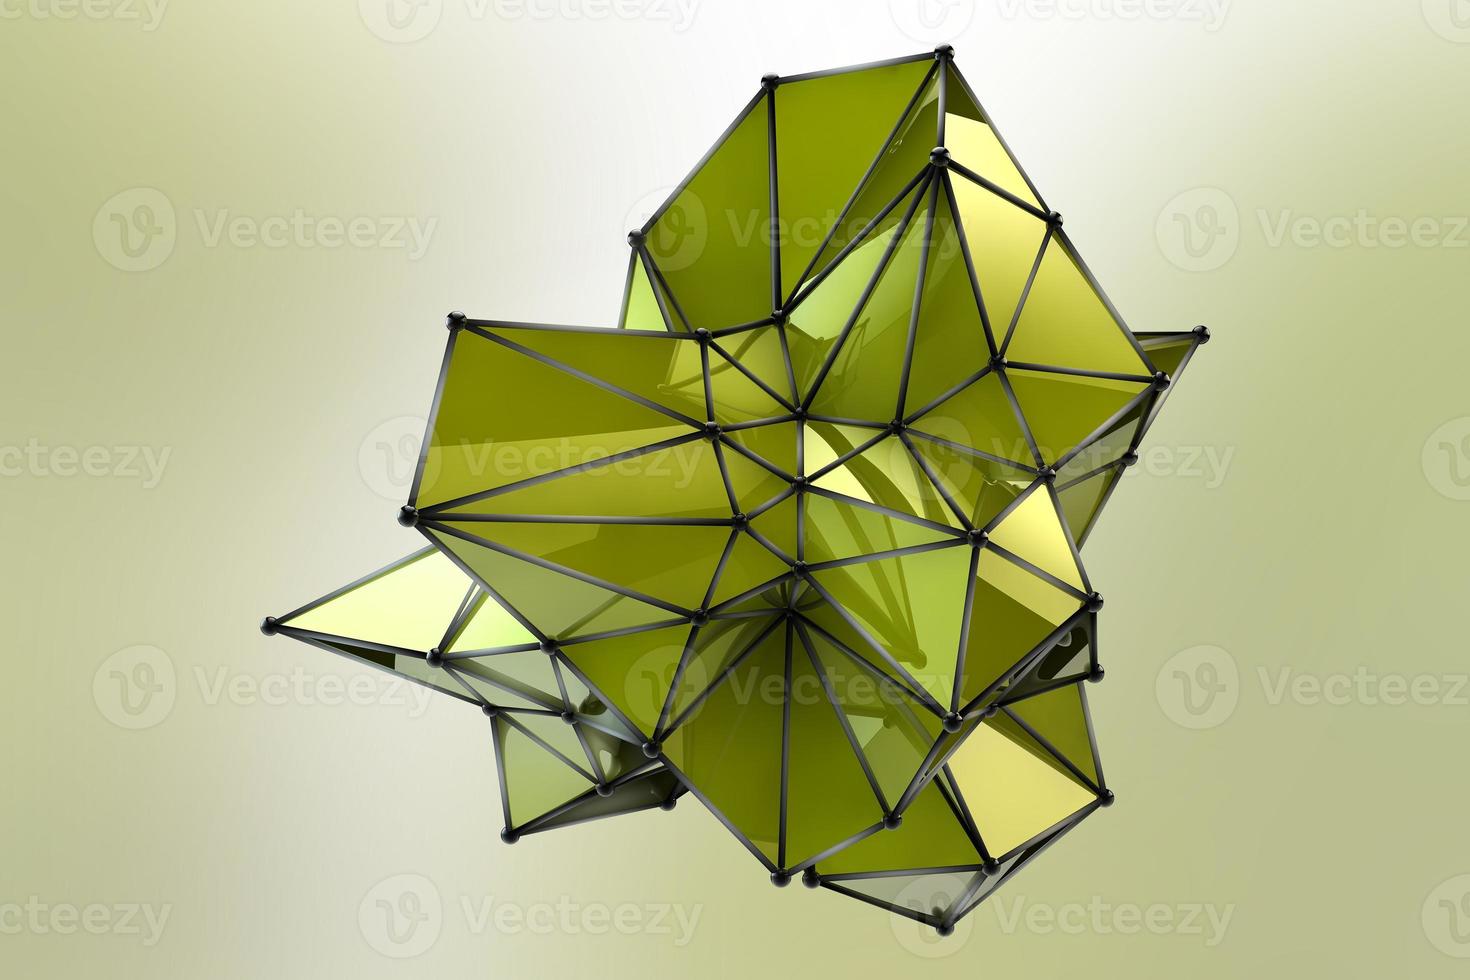 sfera geometrica digitale su sfondo sfocato verde morbido. illustrazione astratta della forma hi-tech di particelle e linee collegate rendering 3d in stile futuristico tecnologico foto